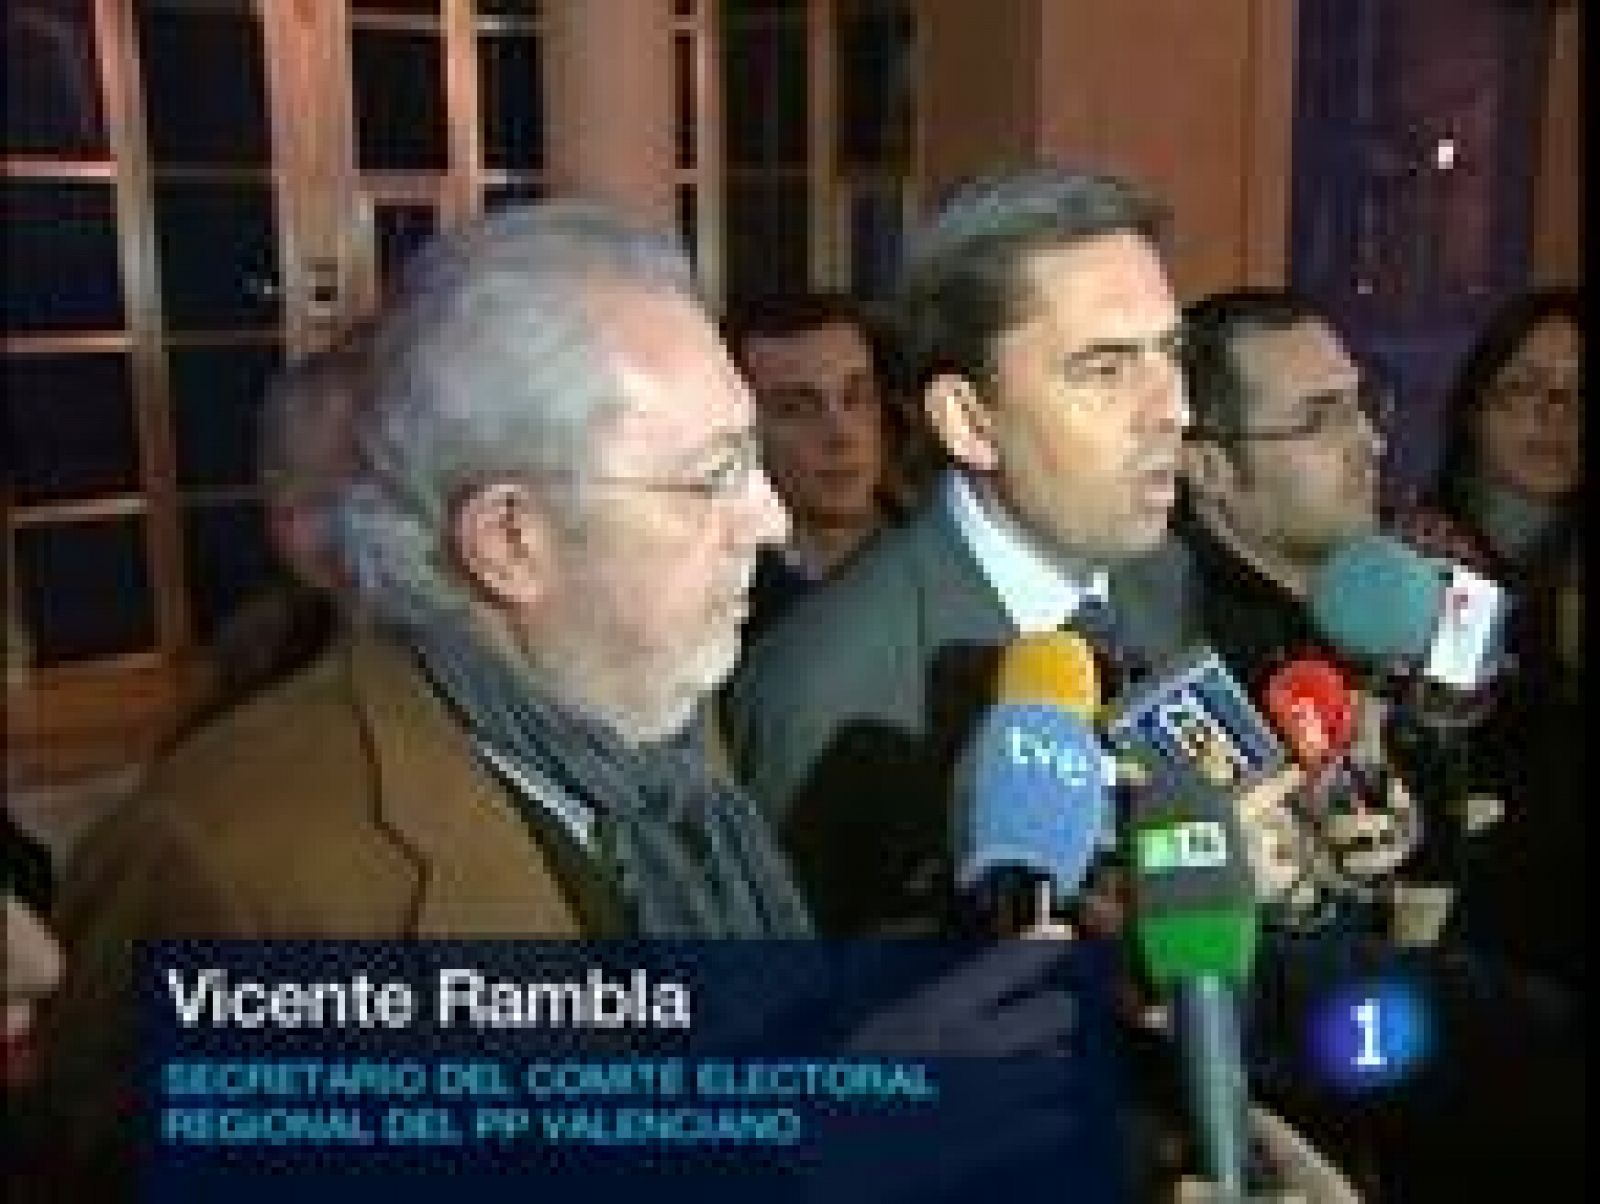 El Comité Electoral regional del PPCV, reunido este lunes de urgencia, ha proclamado a Francisco Camps como candidato a la presidencia de la  Generalitat para las próximas elecciones municipales y autonómicas del 22 de mayo.

